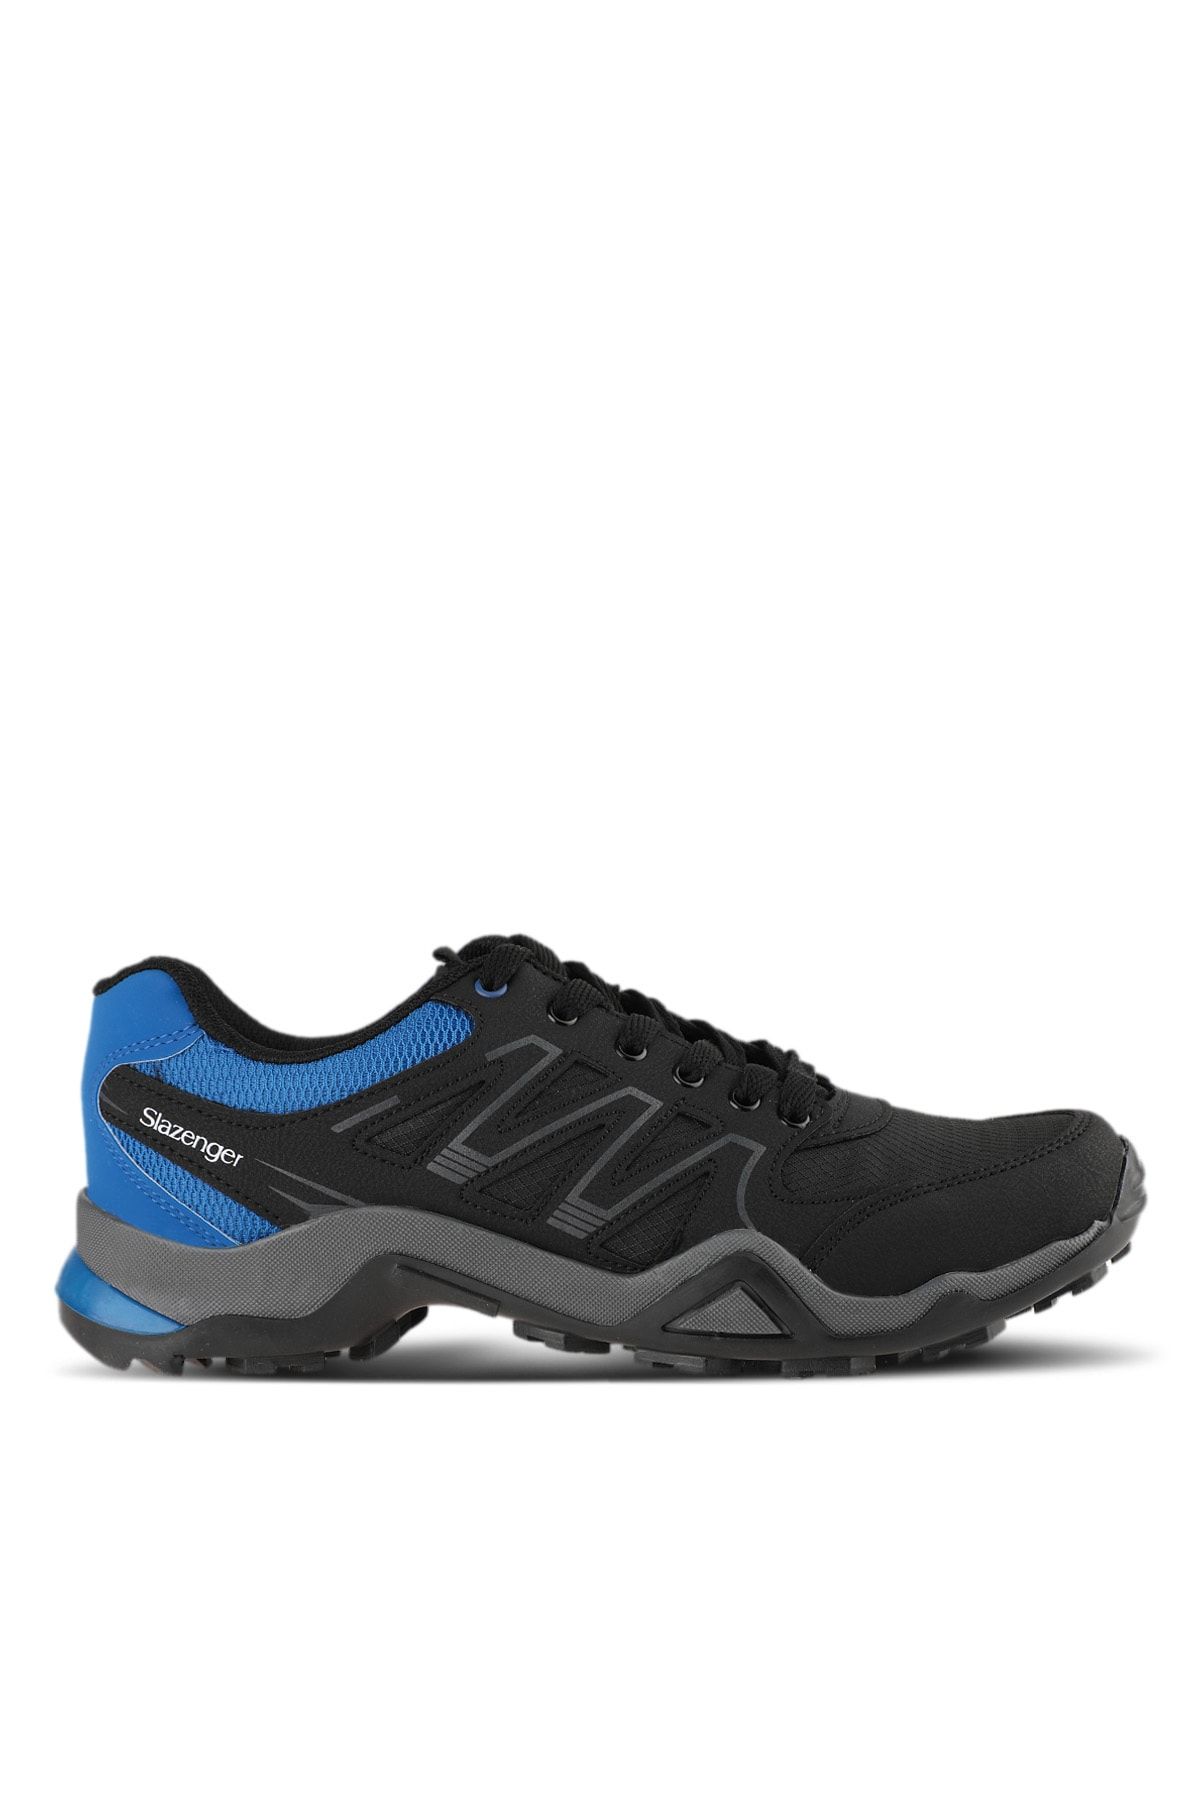 Slazenger Adorında I Outdoor Ayakkabı Erkek Ayakkabı Siyah / Mavi